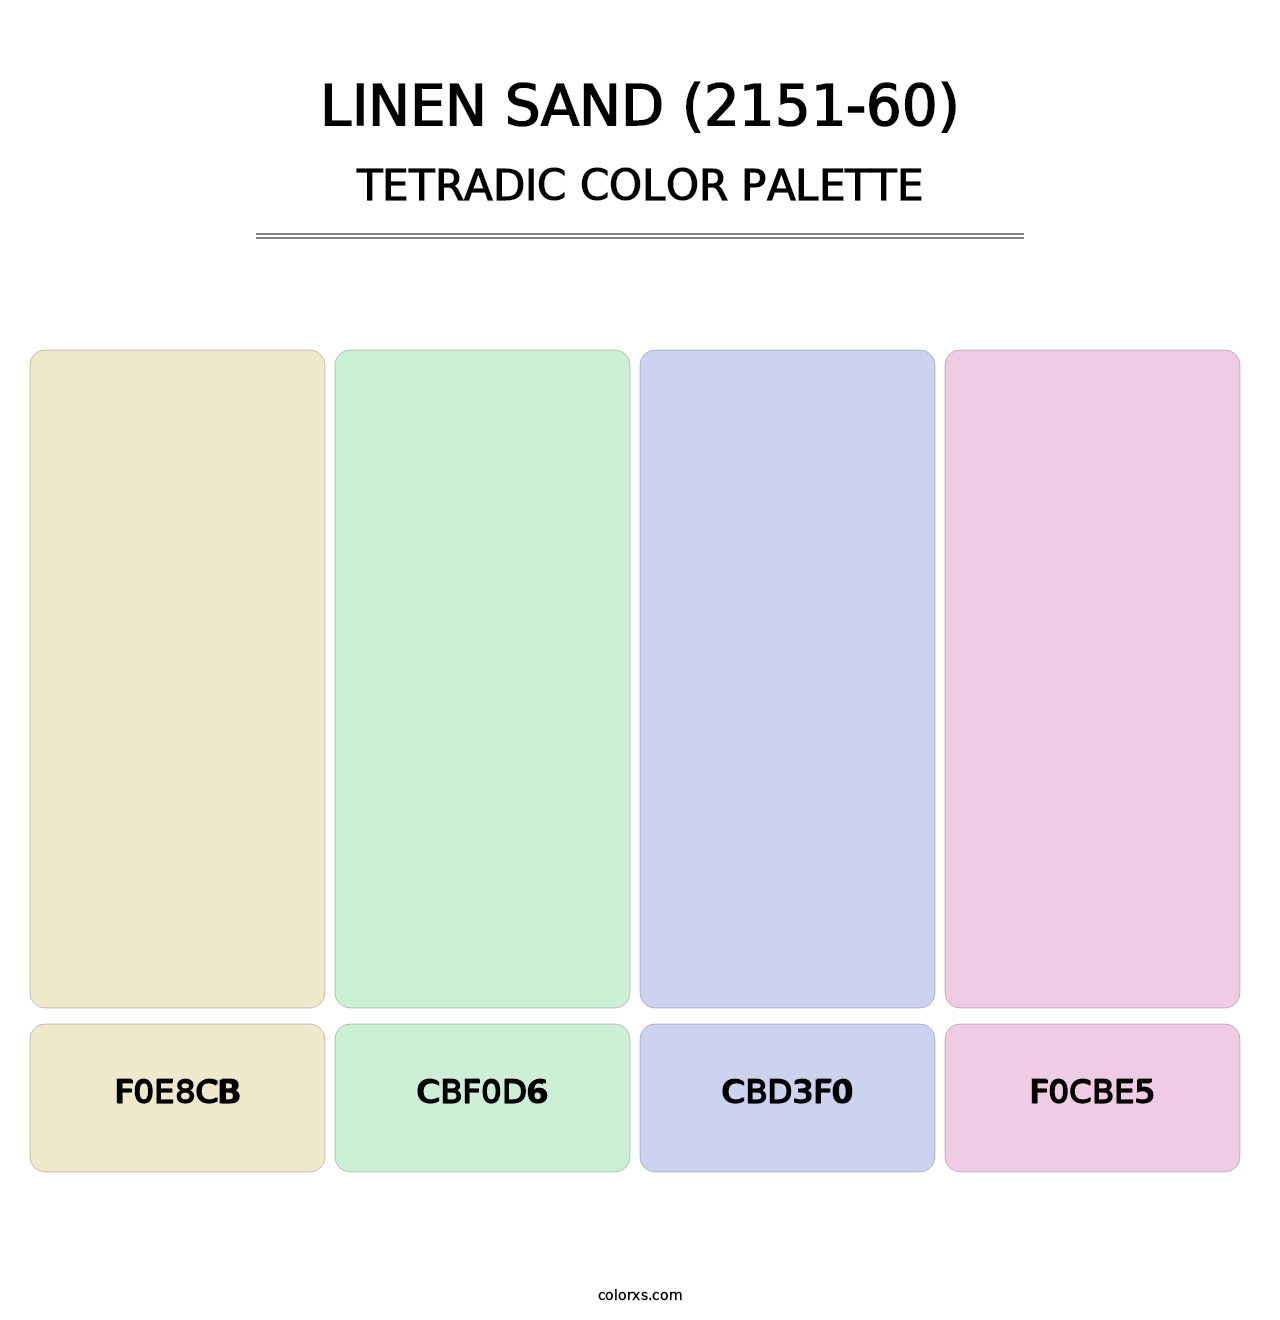 Linen Sand (2151-60) - Tetradic Color Palette